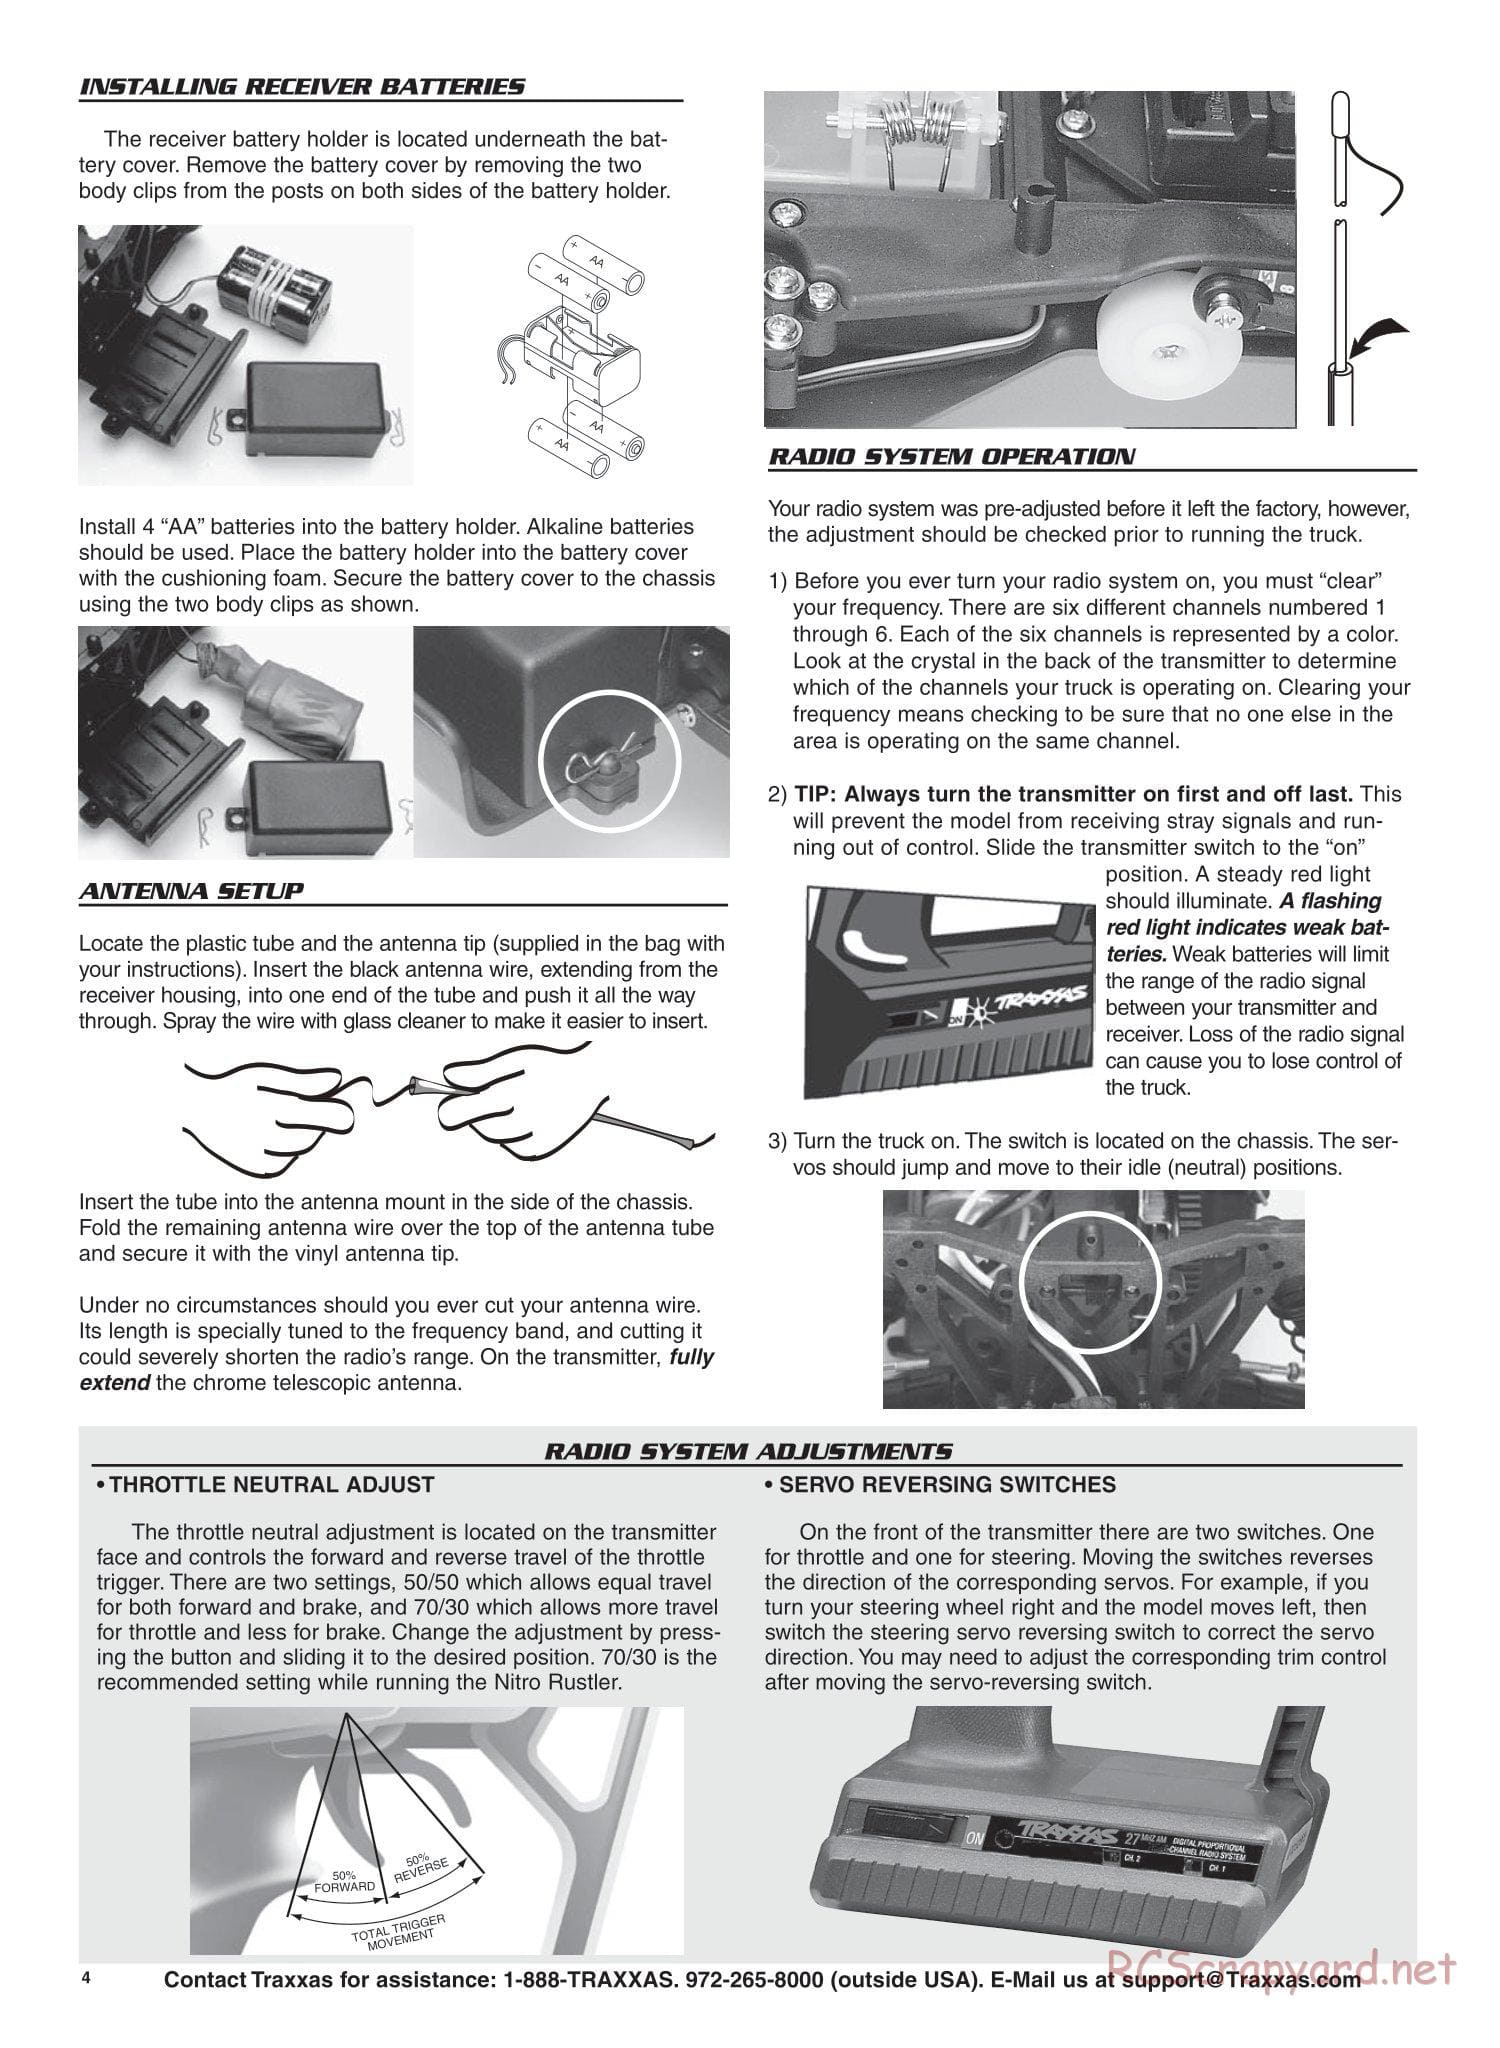 Traxxas - Nitro Rustler - Manual - Page 4